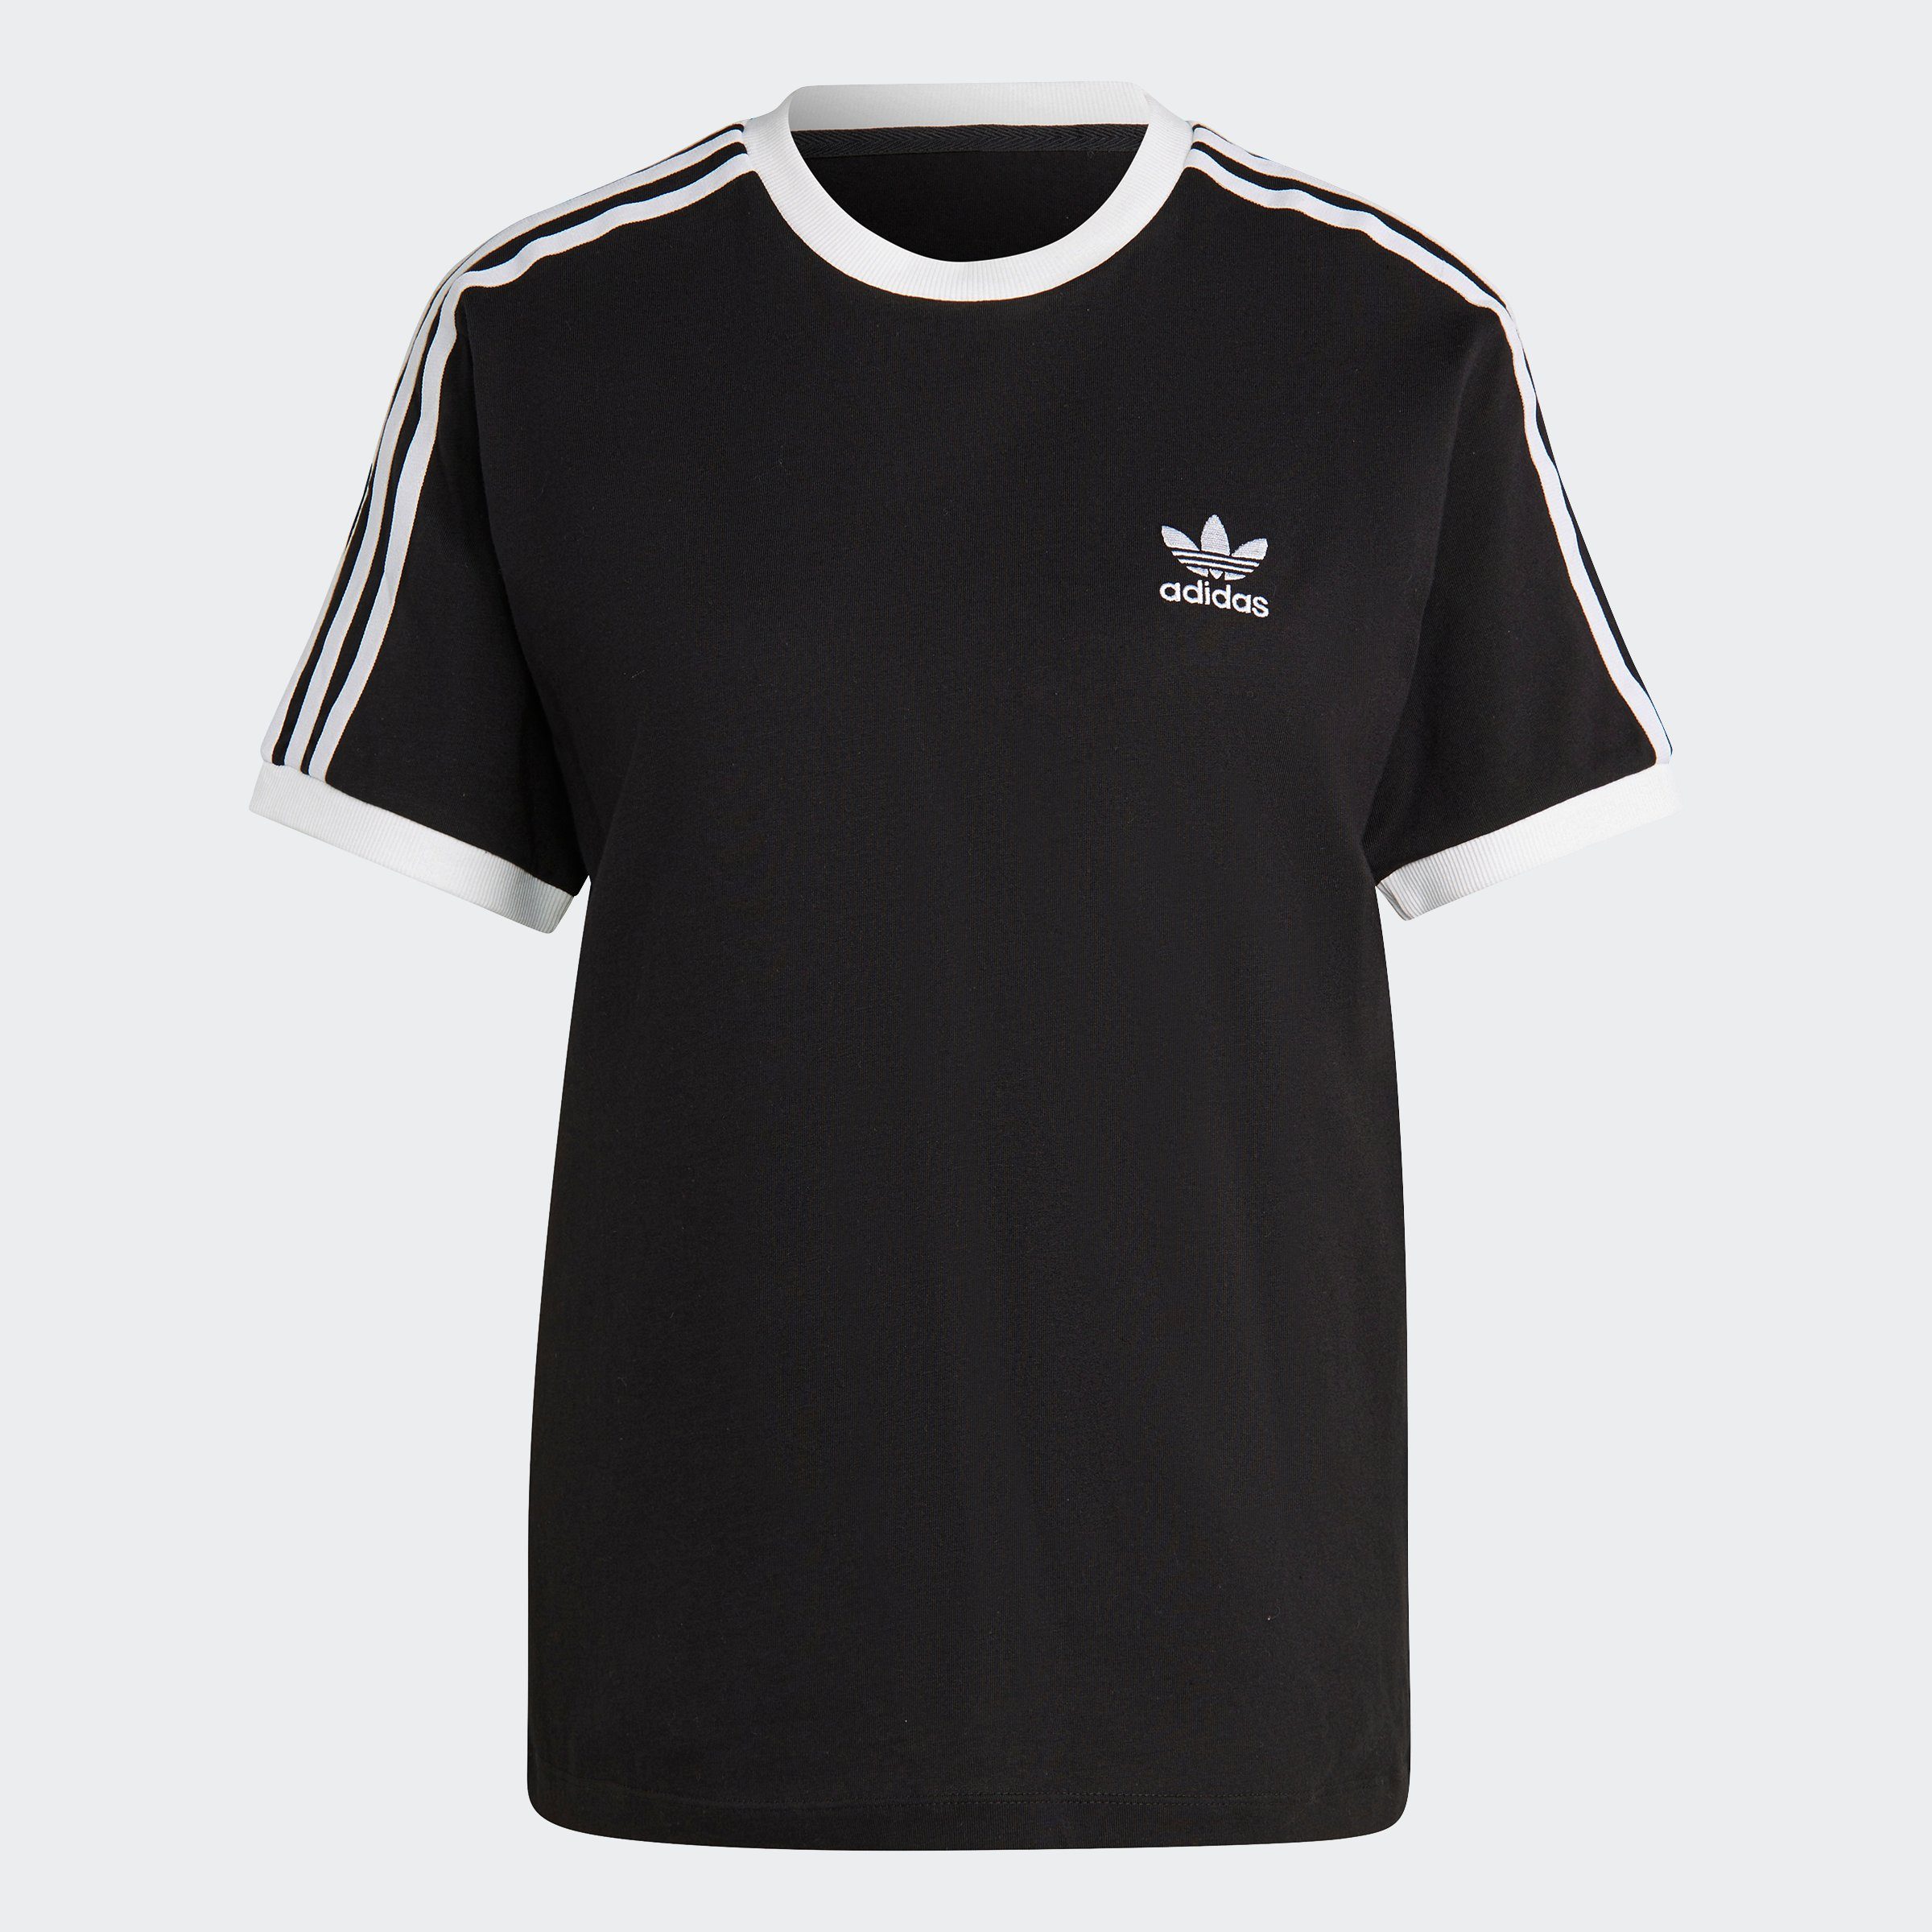 adidas Originals T-Shirt ADICOLOR CLASSICS Black 3-STREIFEN